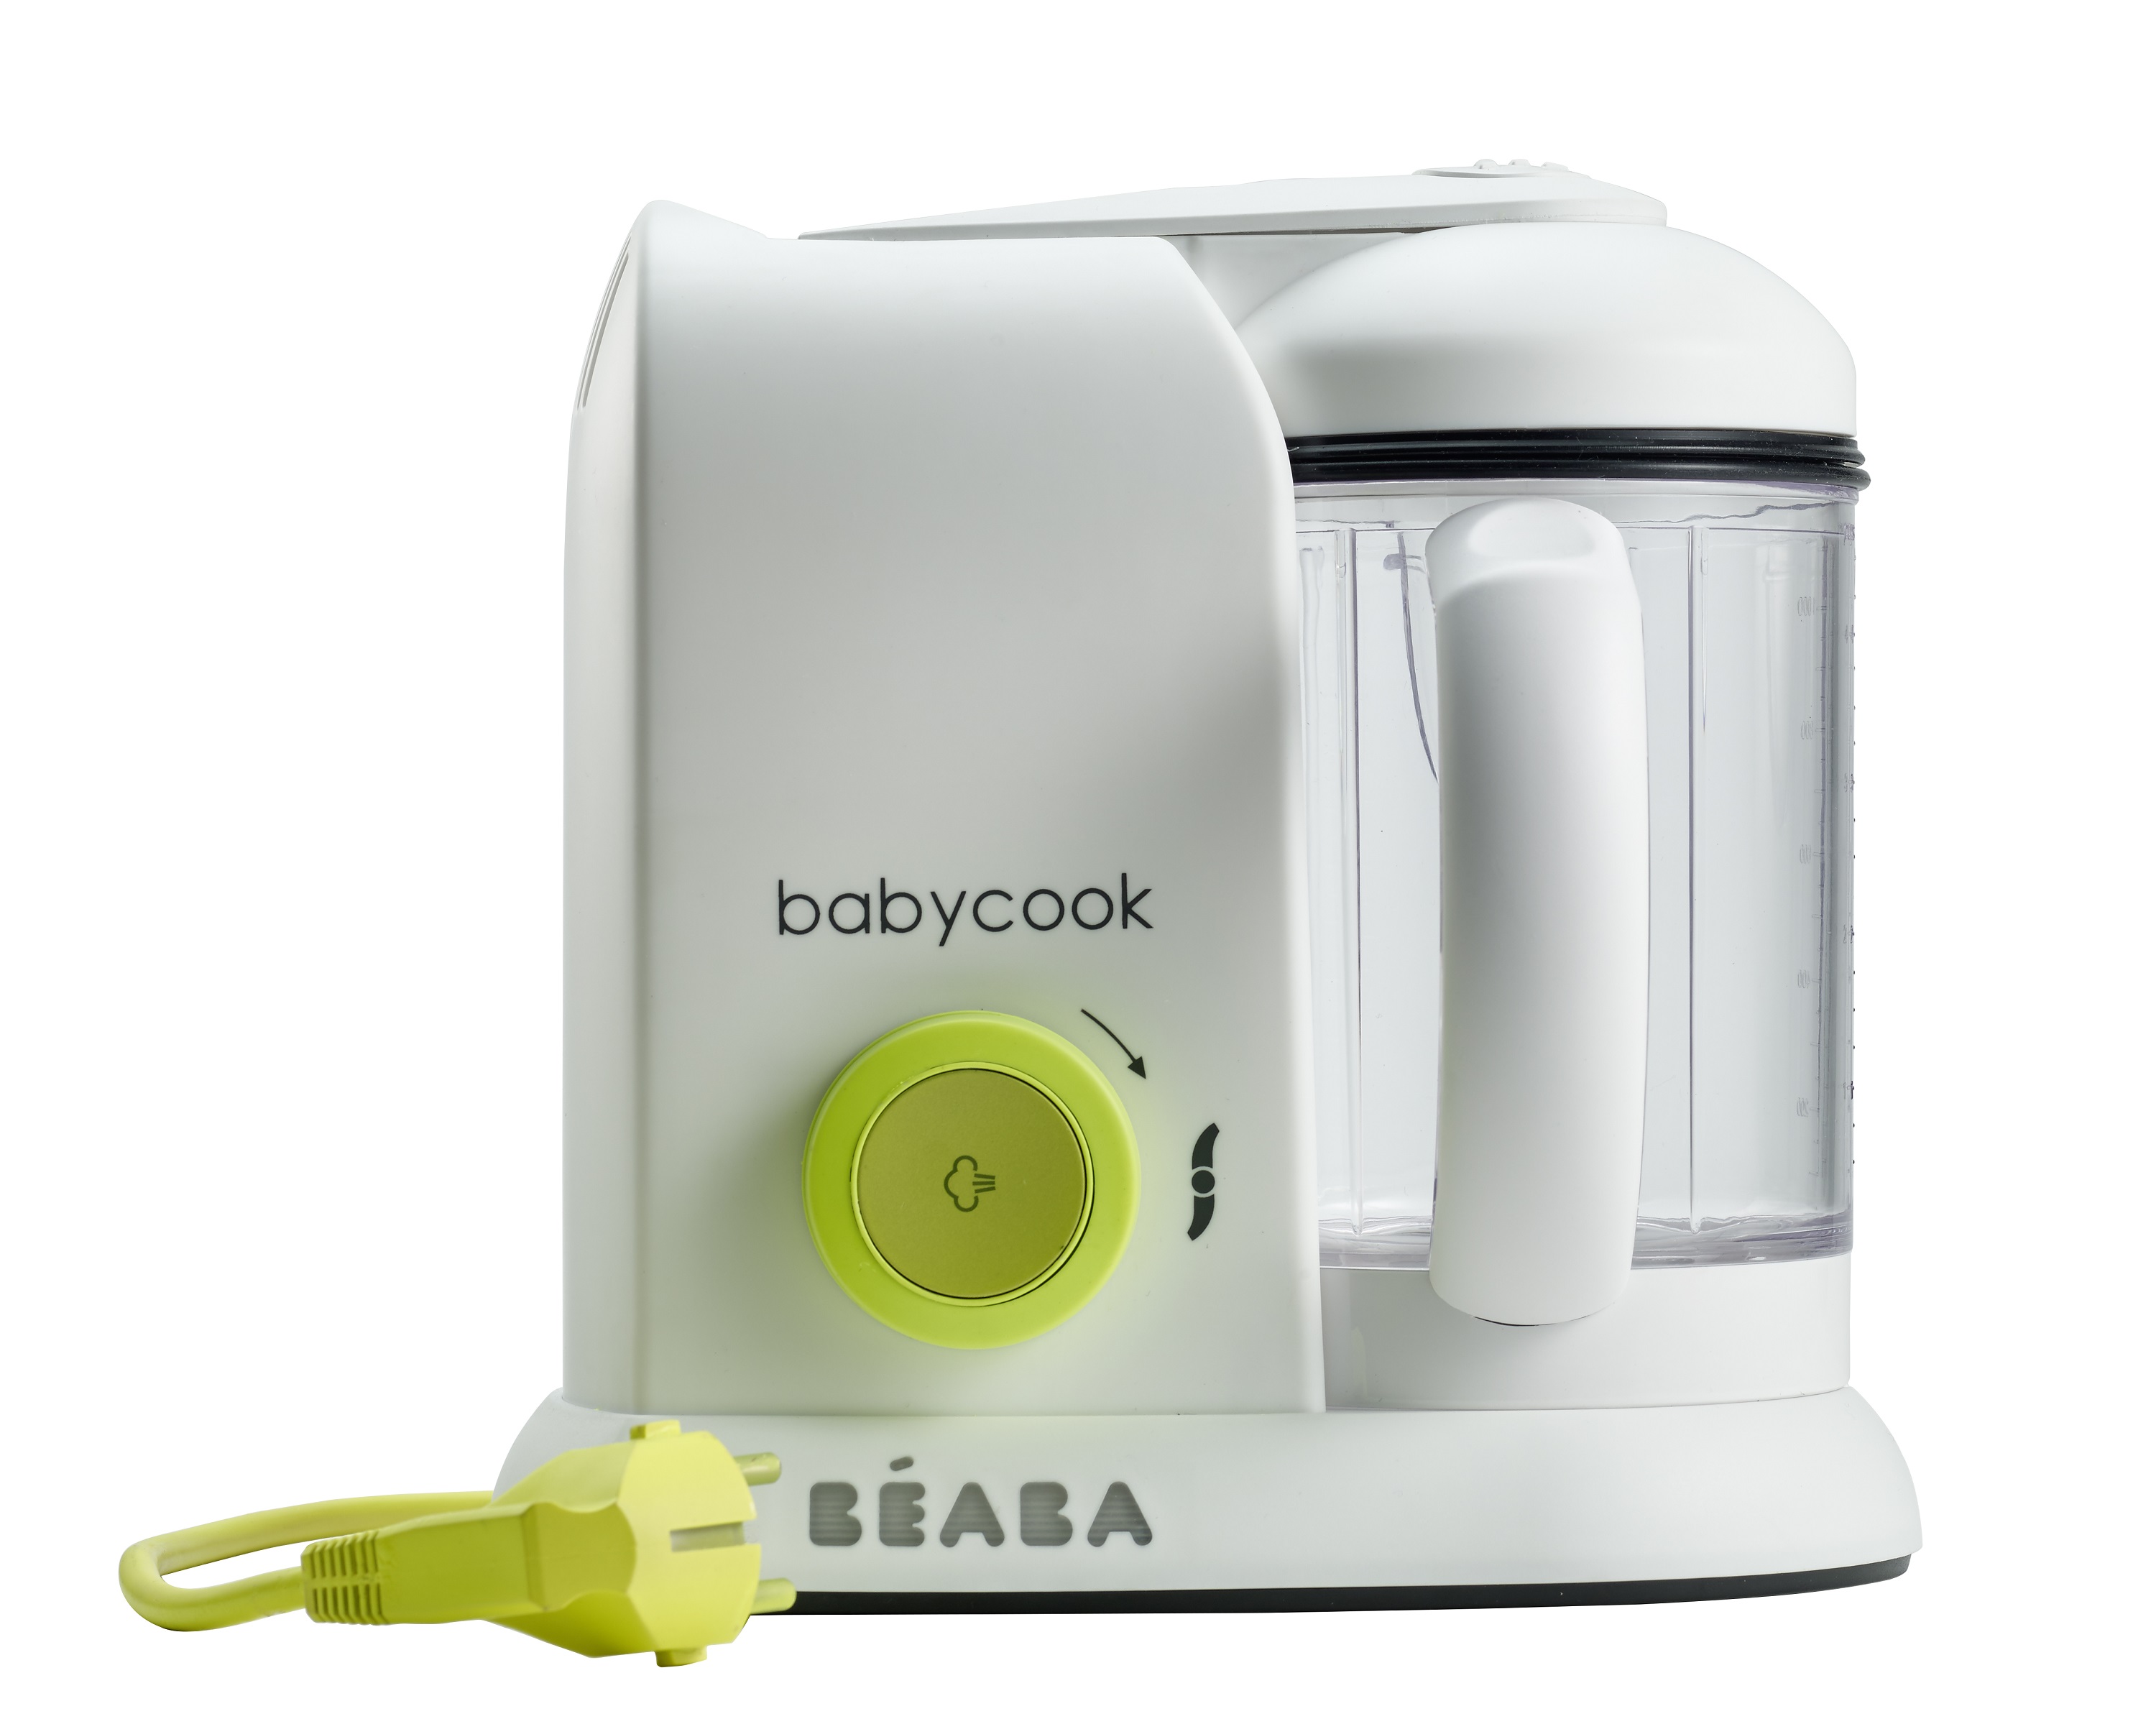 BEABA, Babycook express, robot bébé, 4 en 1 mixeur-cuiseur, terre d'argile